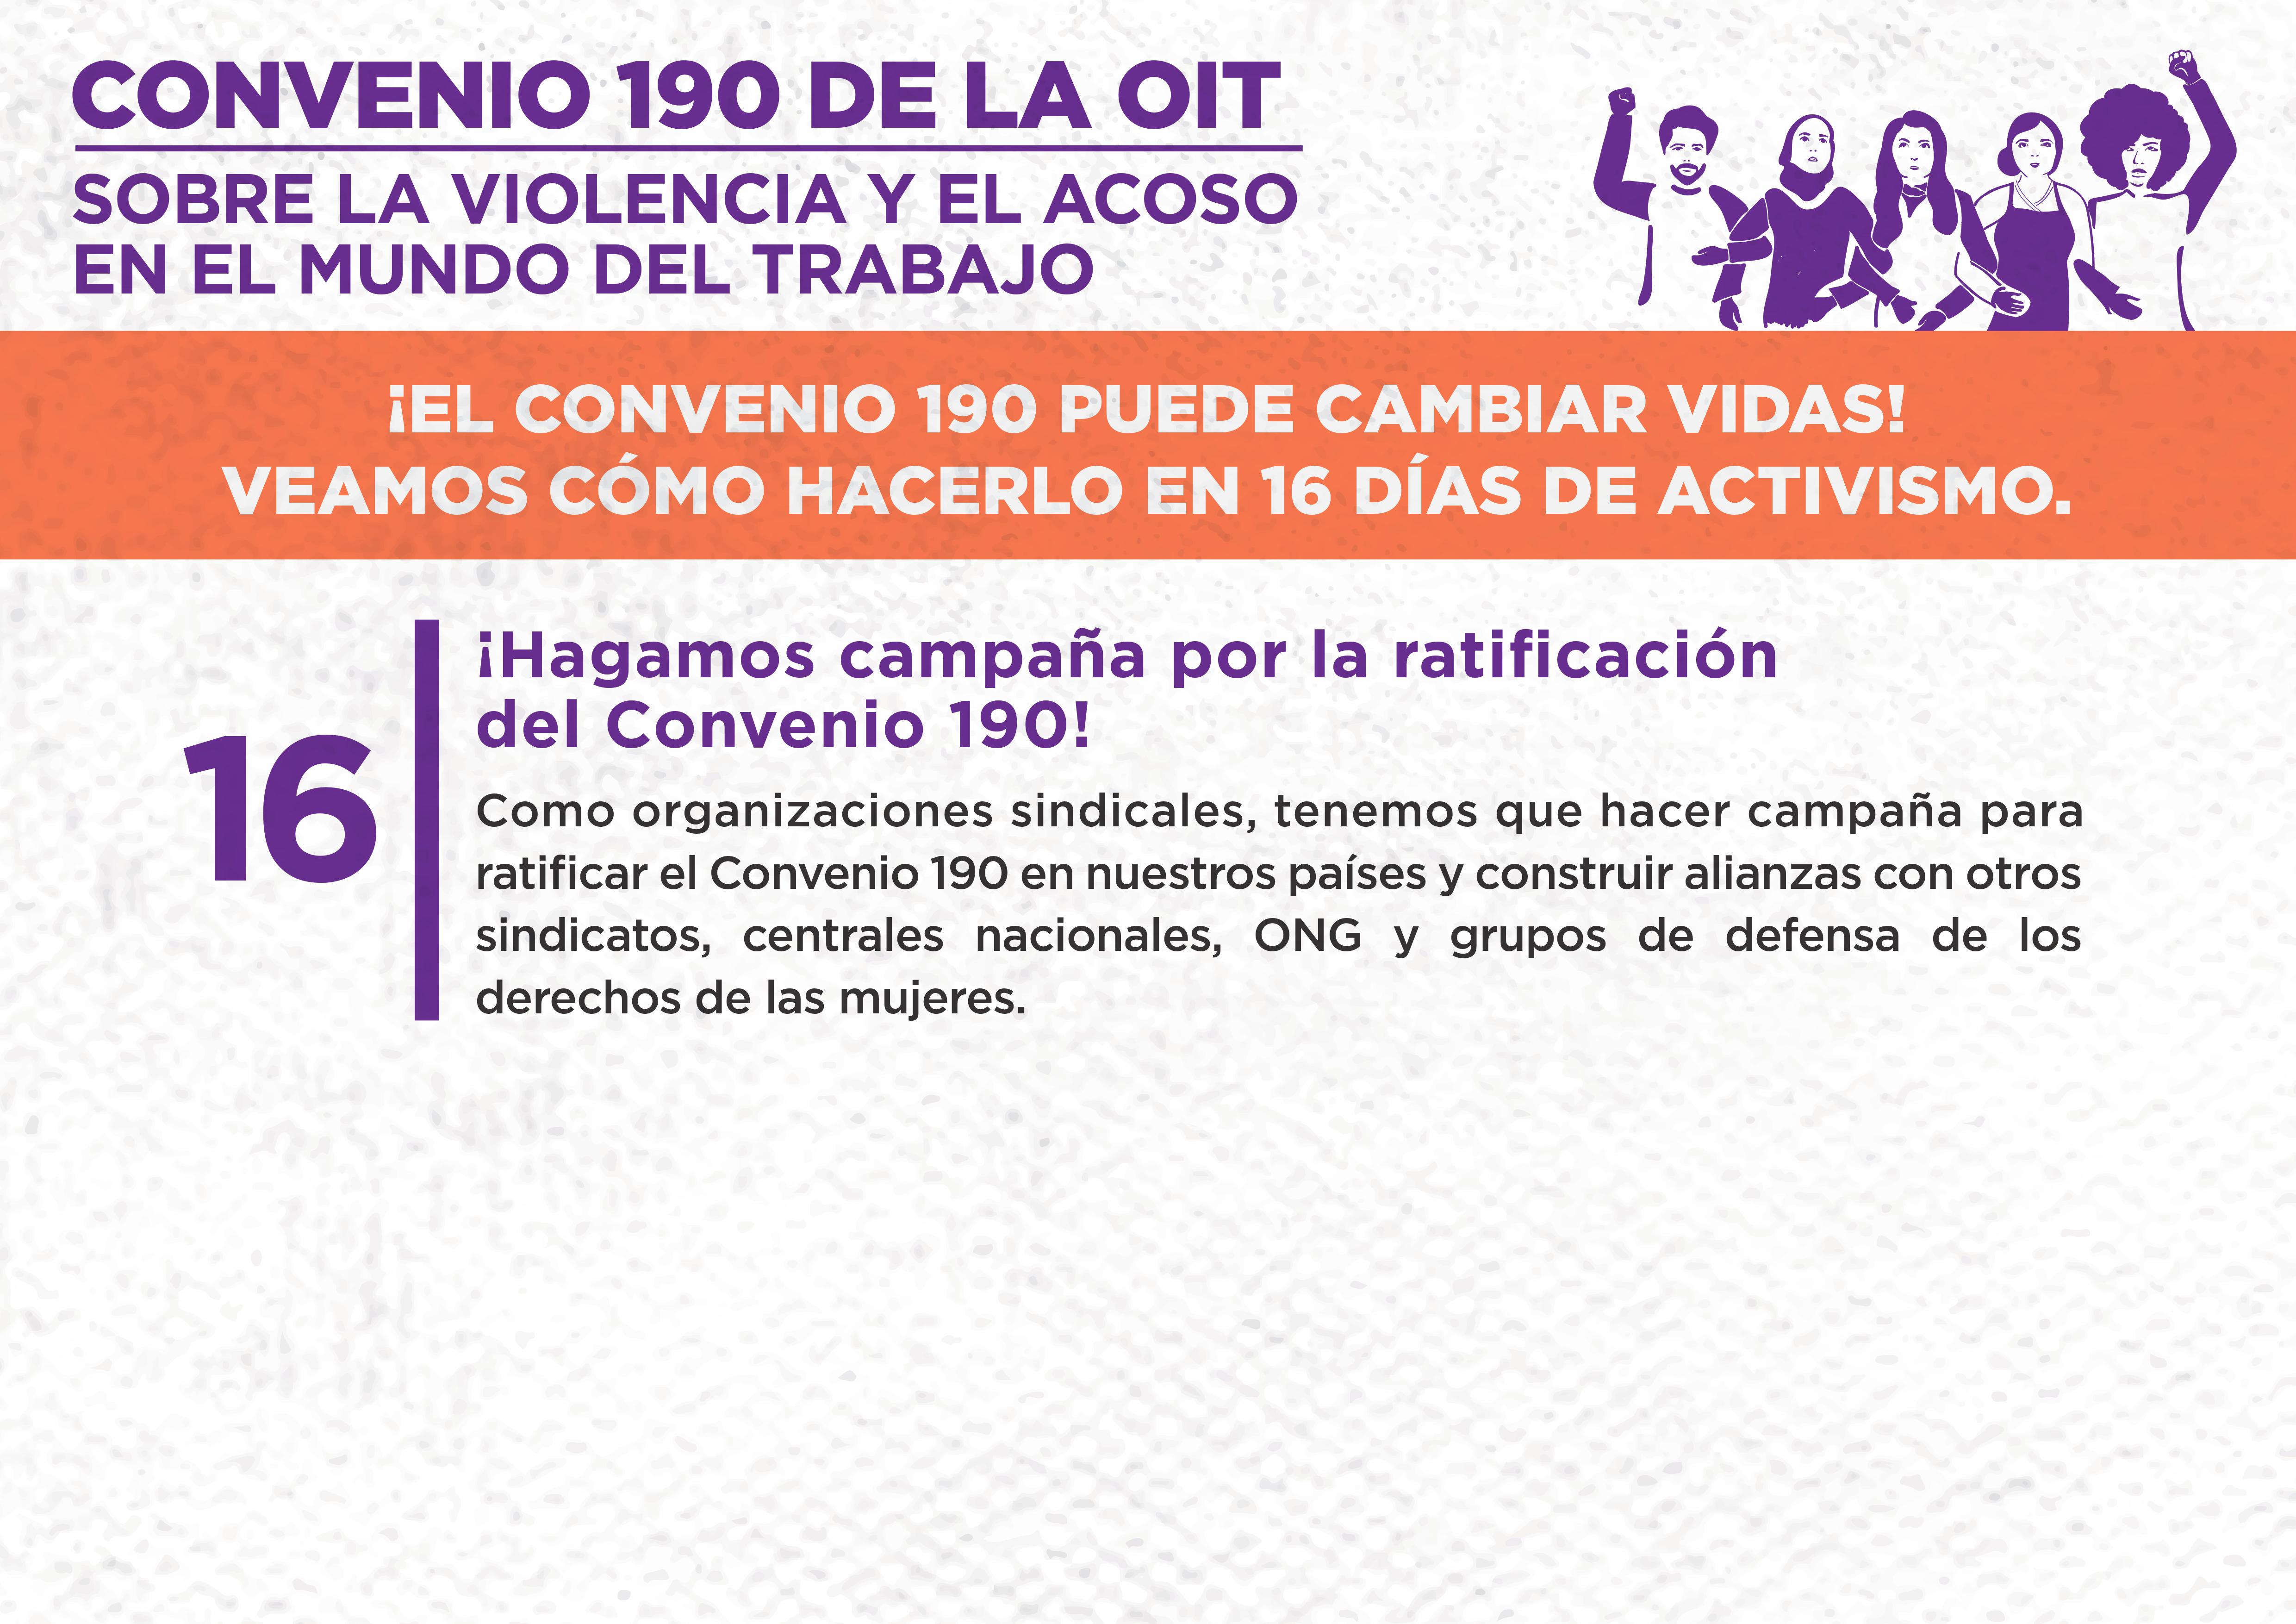 16. ¡Hagamos campaña por la ratificación del Convenio 190!